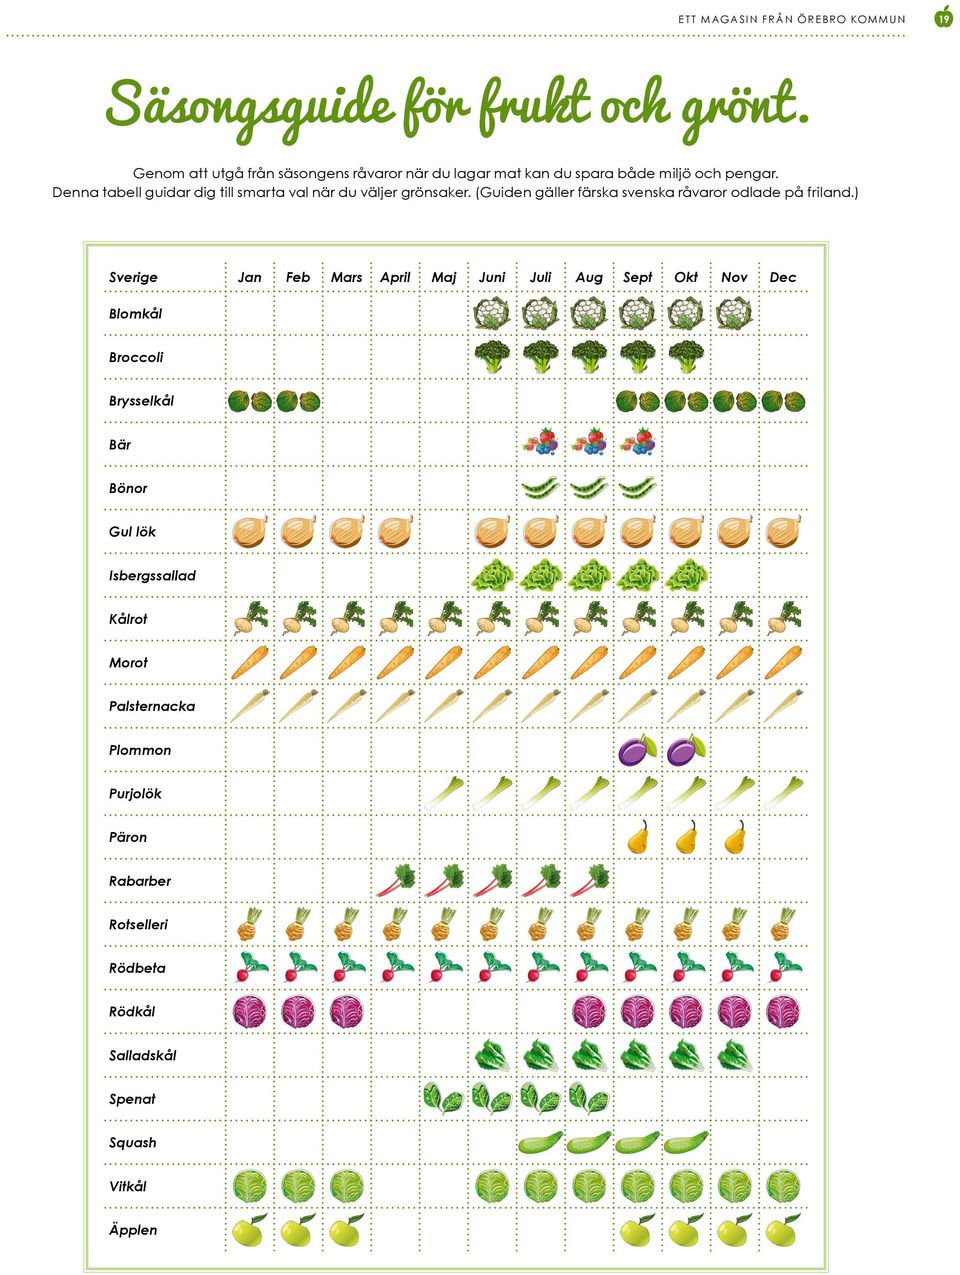 Denna tabell guidar dig till smarta val när du väljer grönsaker. (Guiden gäller färska svenska råvaror odlade på friland.